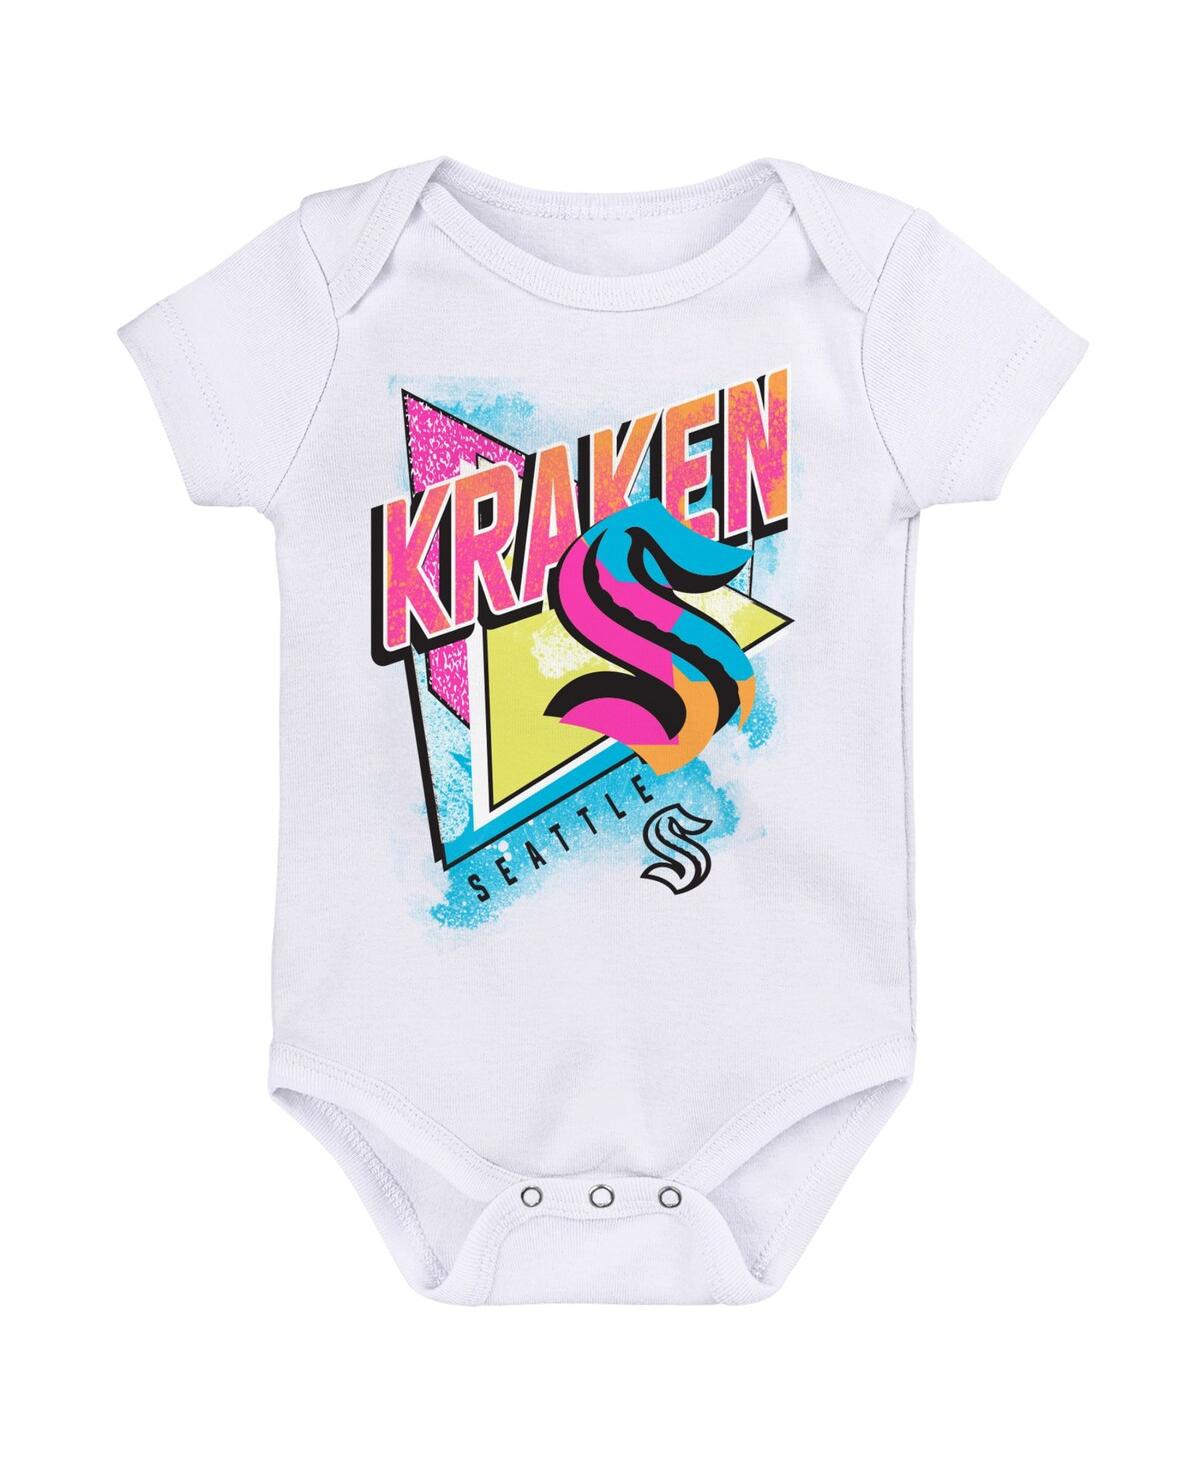 Outerstuff Babies' Newborn And Infant Boys And Girls White Seattle Kraken Full Throttle Bodysuit